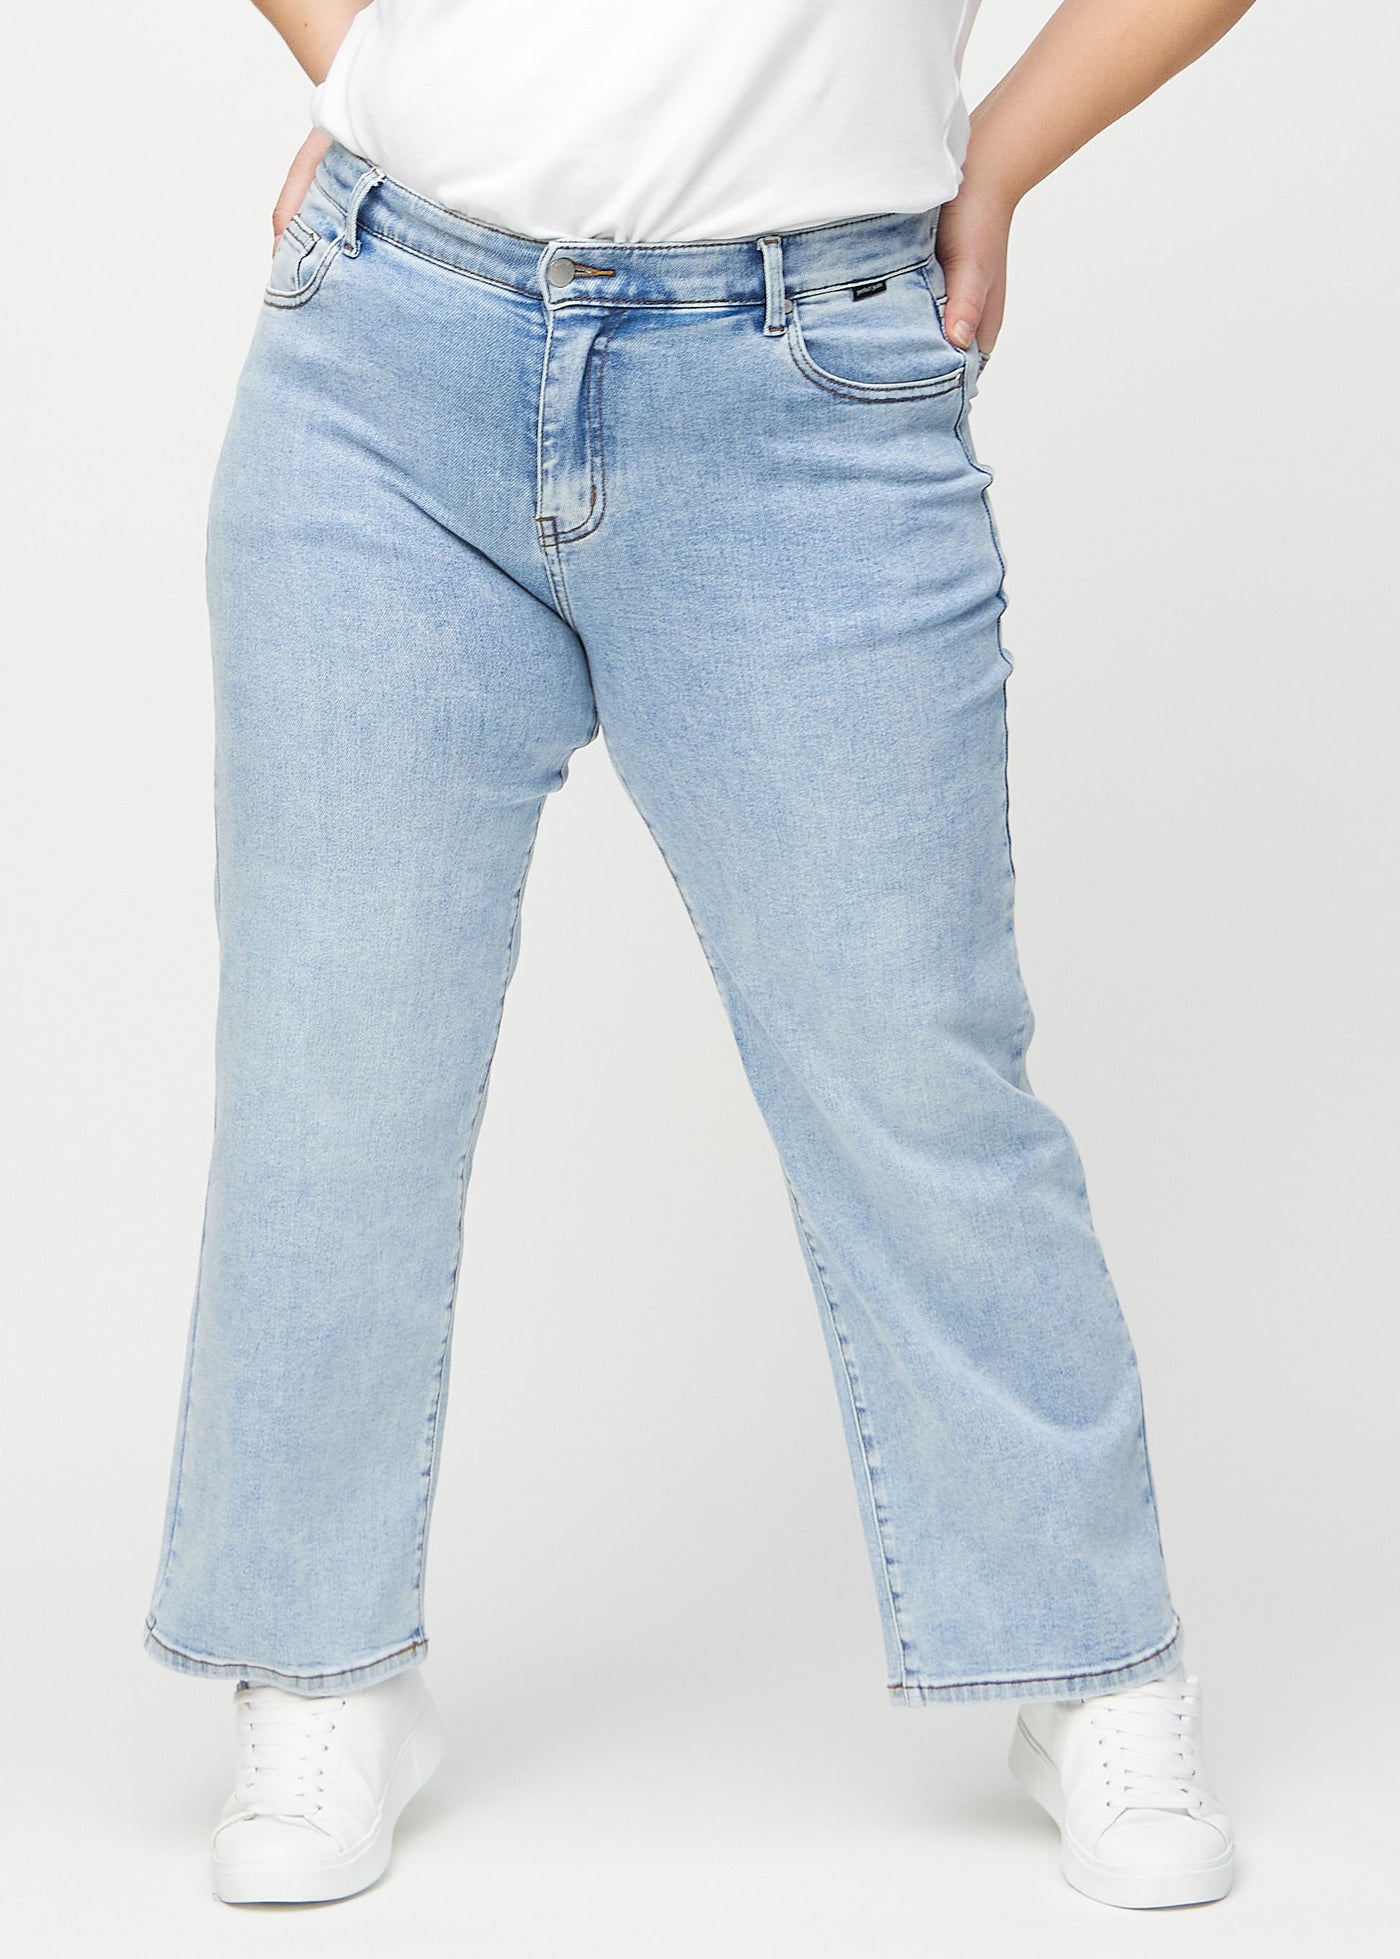 Lys denim loose jeans, modelnavn Waves, som er løstsiddende med masser af vidde i benene på en plus-size model, set forfra.